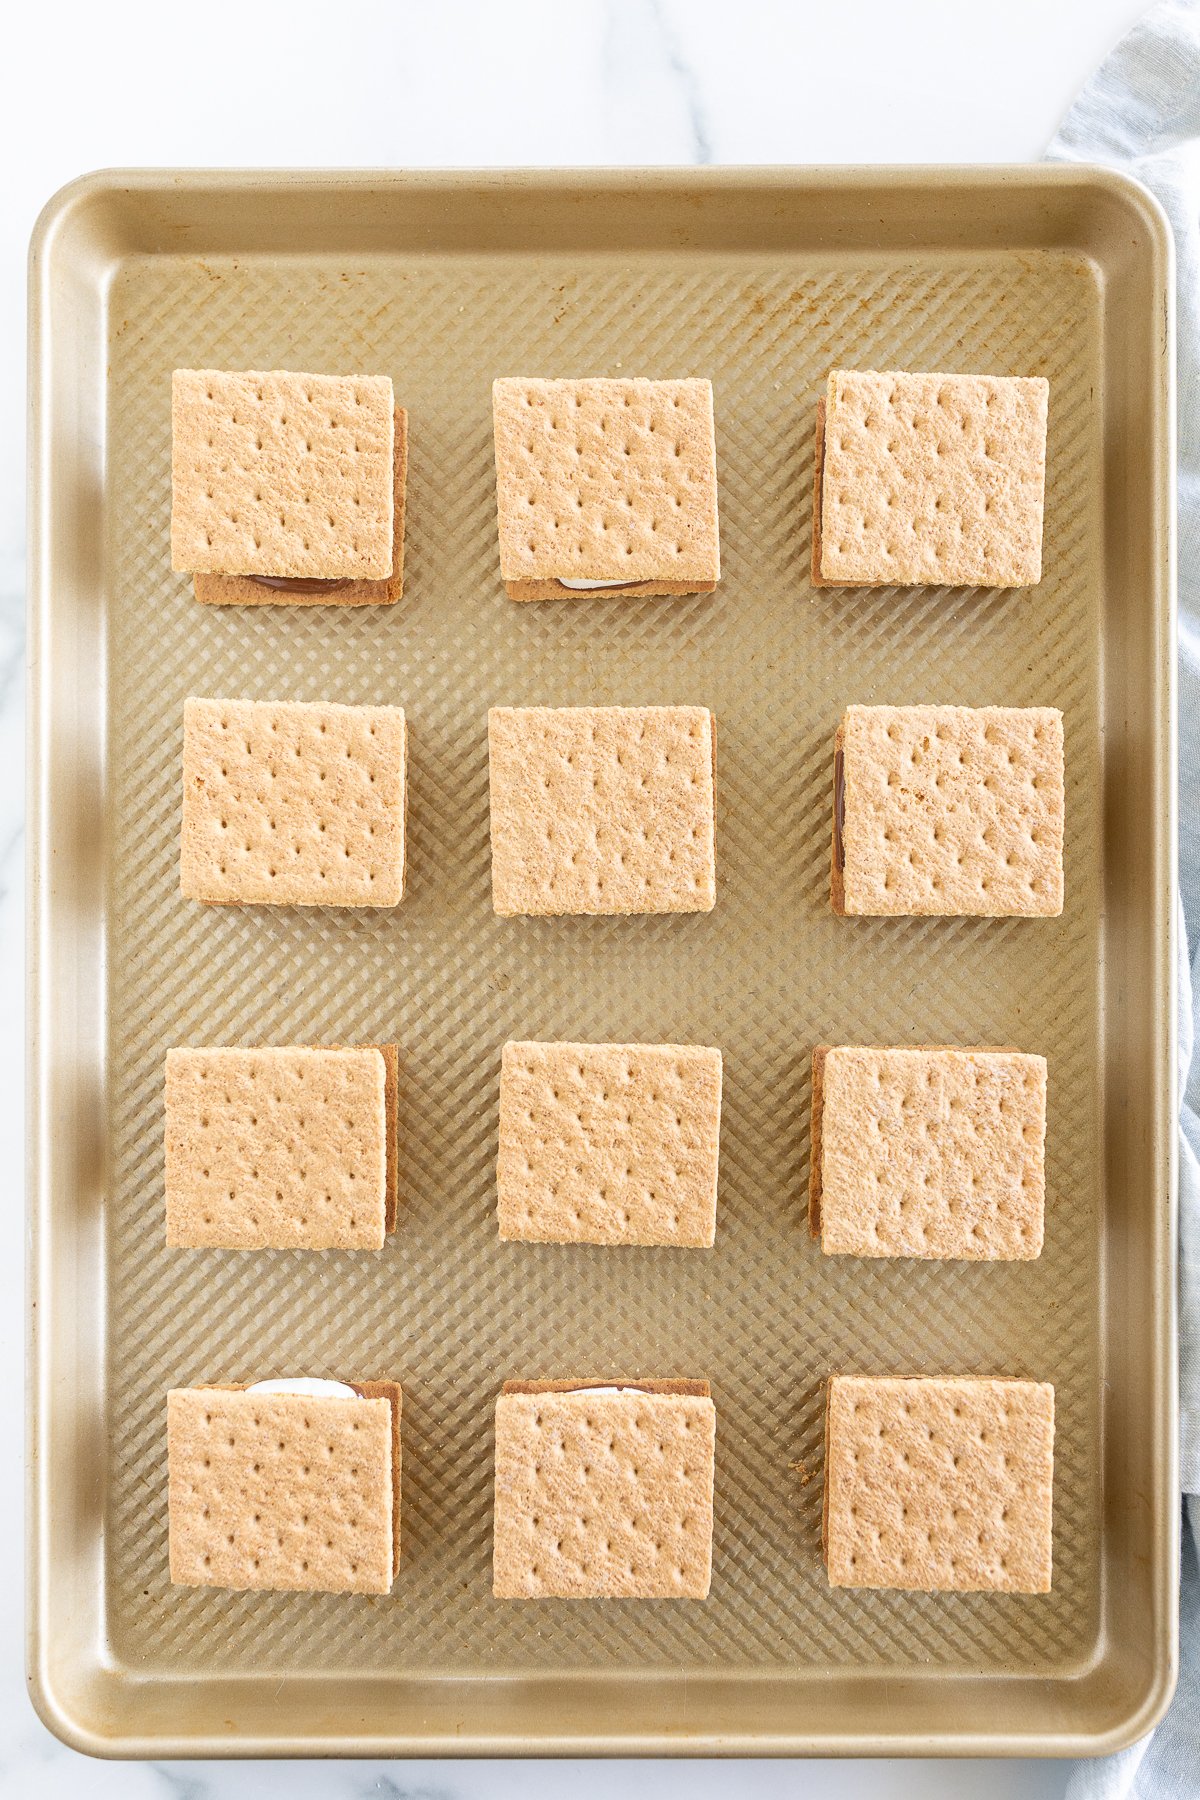 Graham cracker squares baking sheet

Keywords: baking sheet